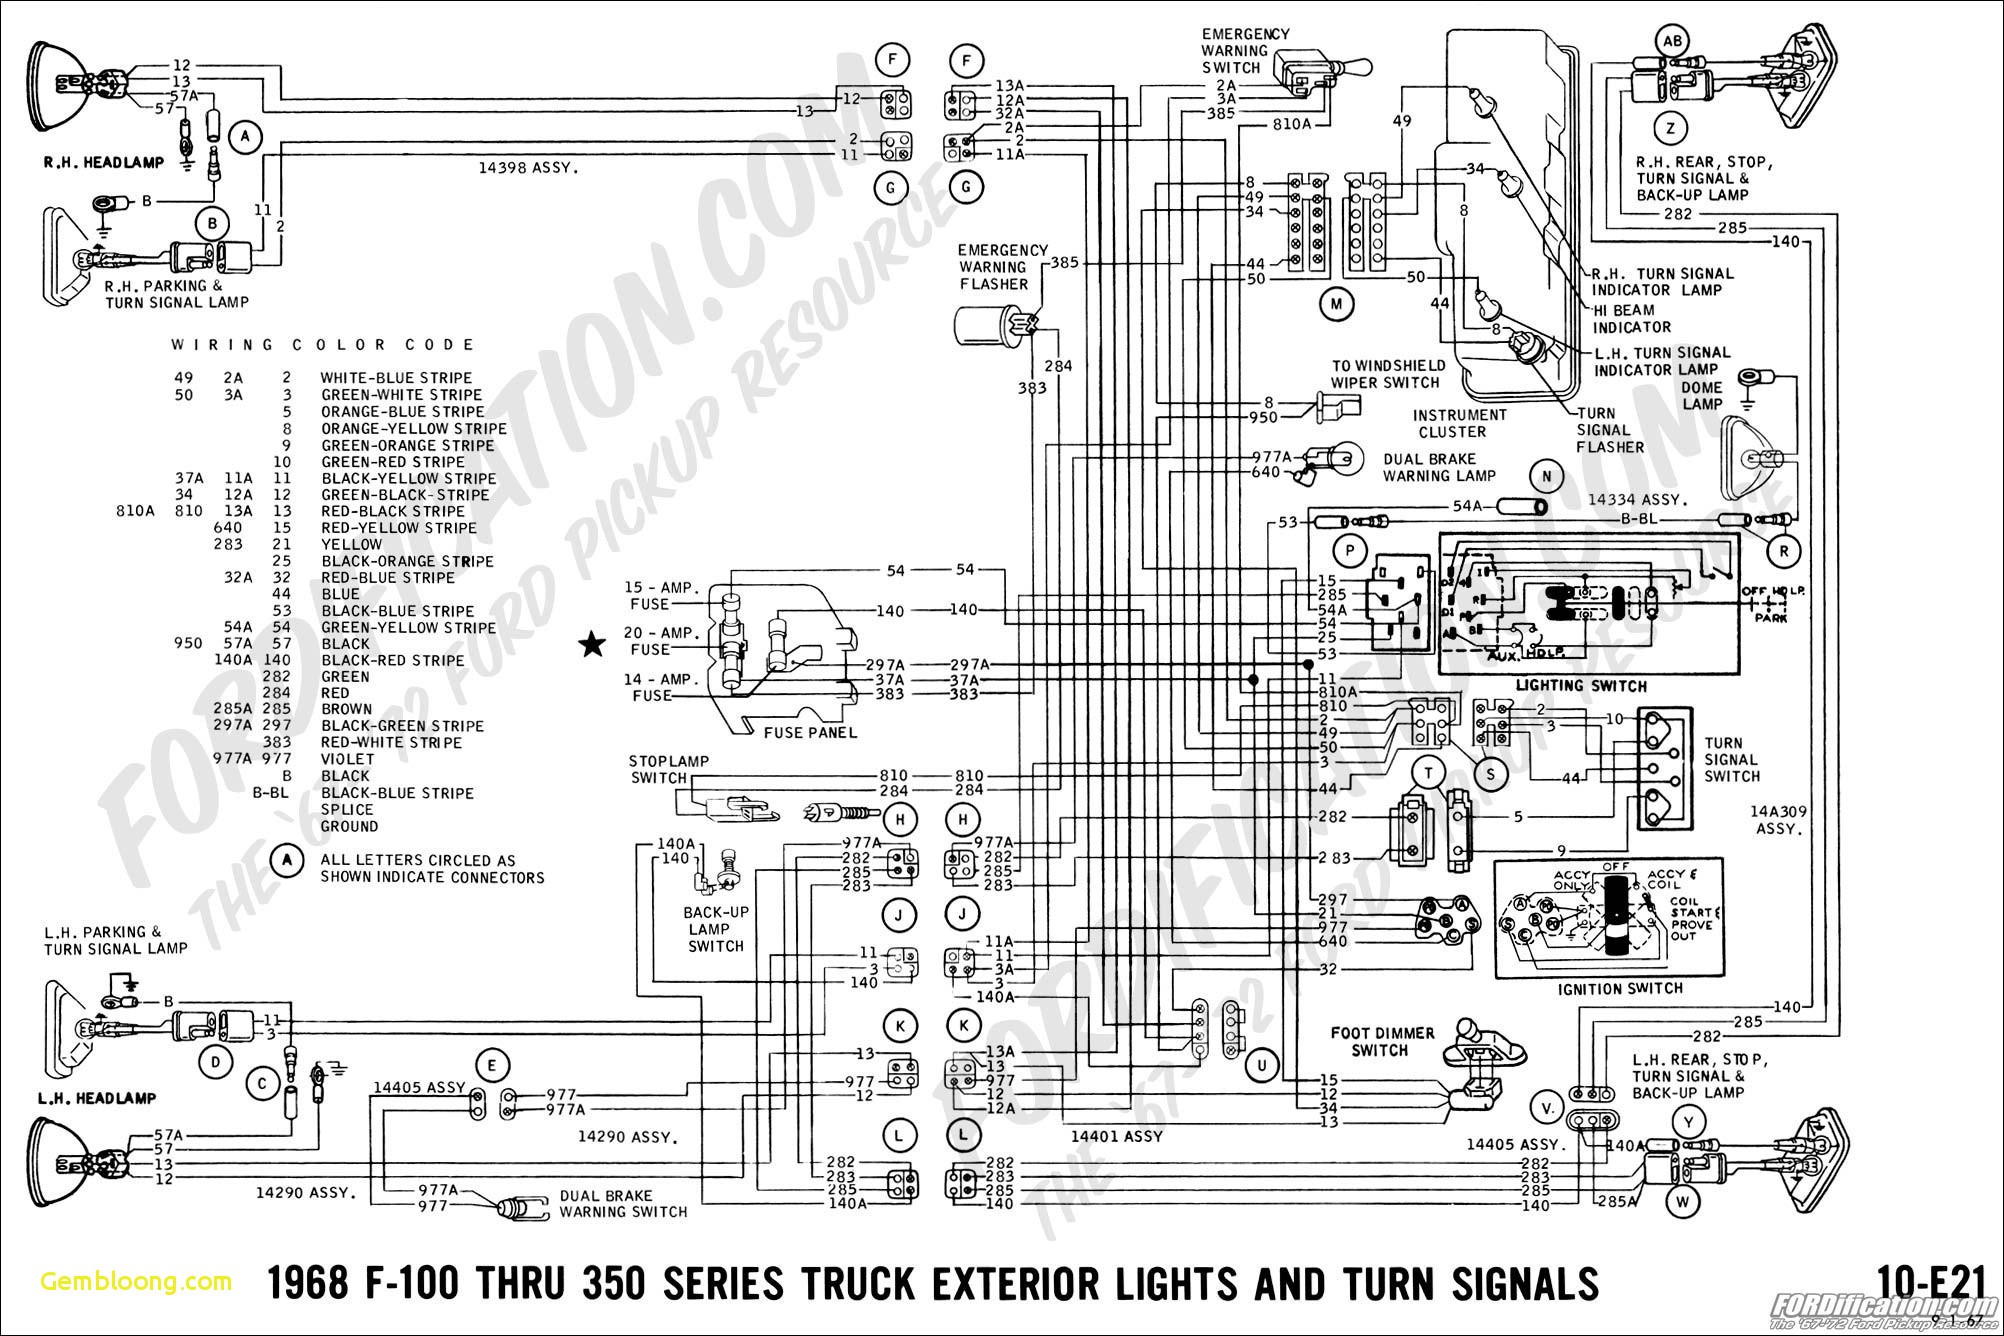 Ford Escort Zetec Engine Diagram ford Escort Wiring Diagram 1997 Wiring Diagram for You Of Ford Escort Zetec Engine Diagram